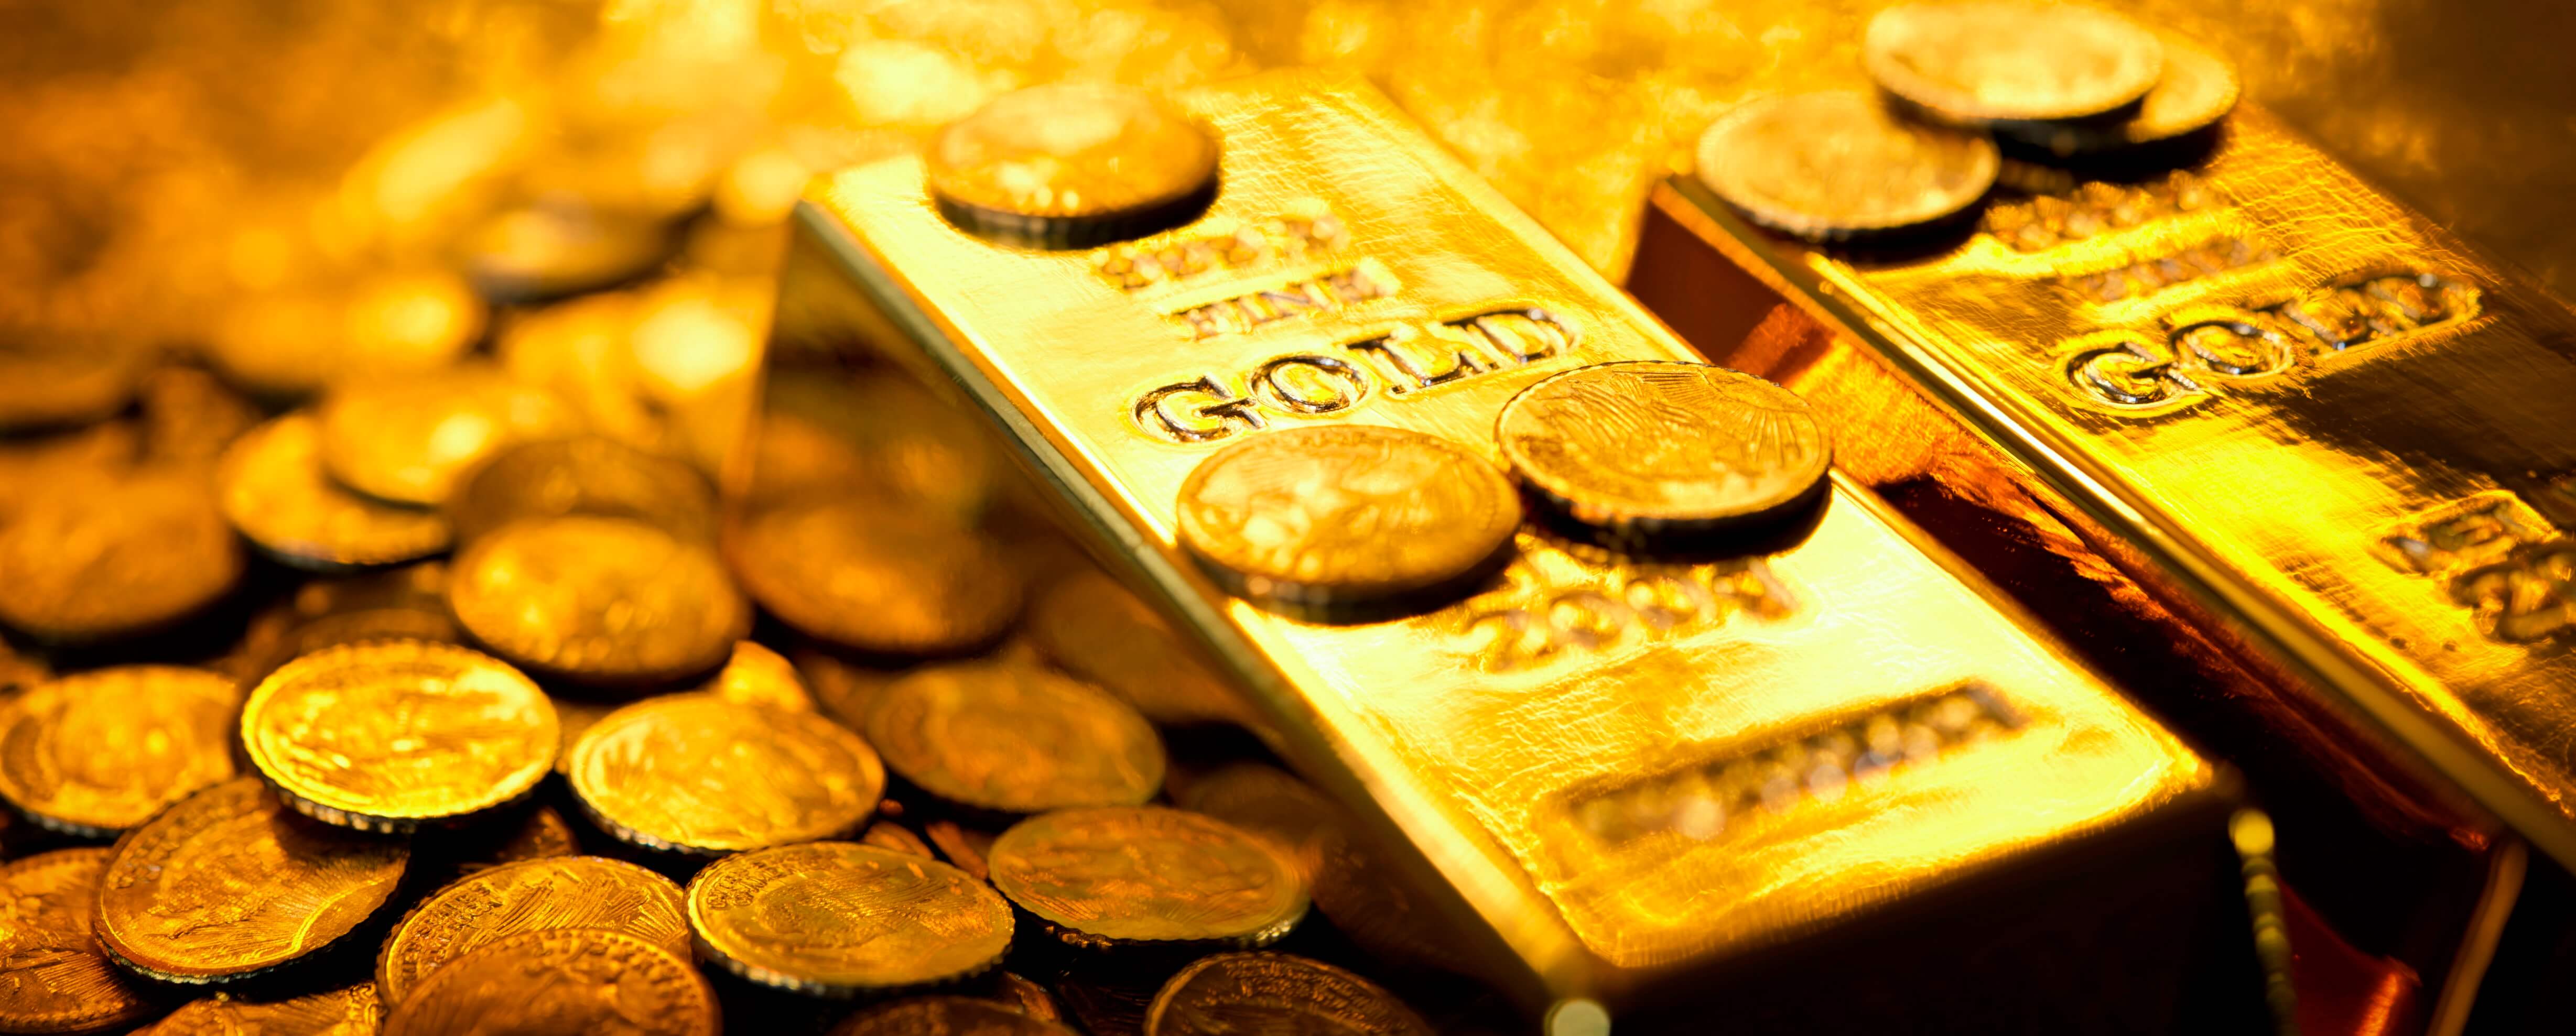 أسعار الذهب اليوم الخميس 3 1 2019 تواصل ارتفاعها وعيار 24 يسجل 742